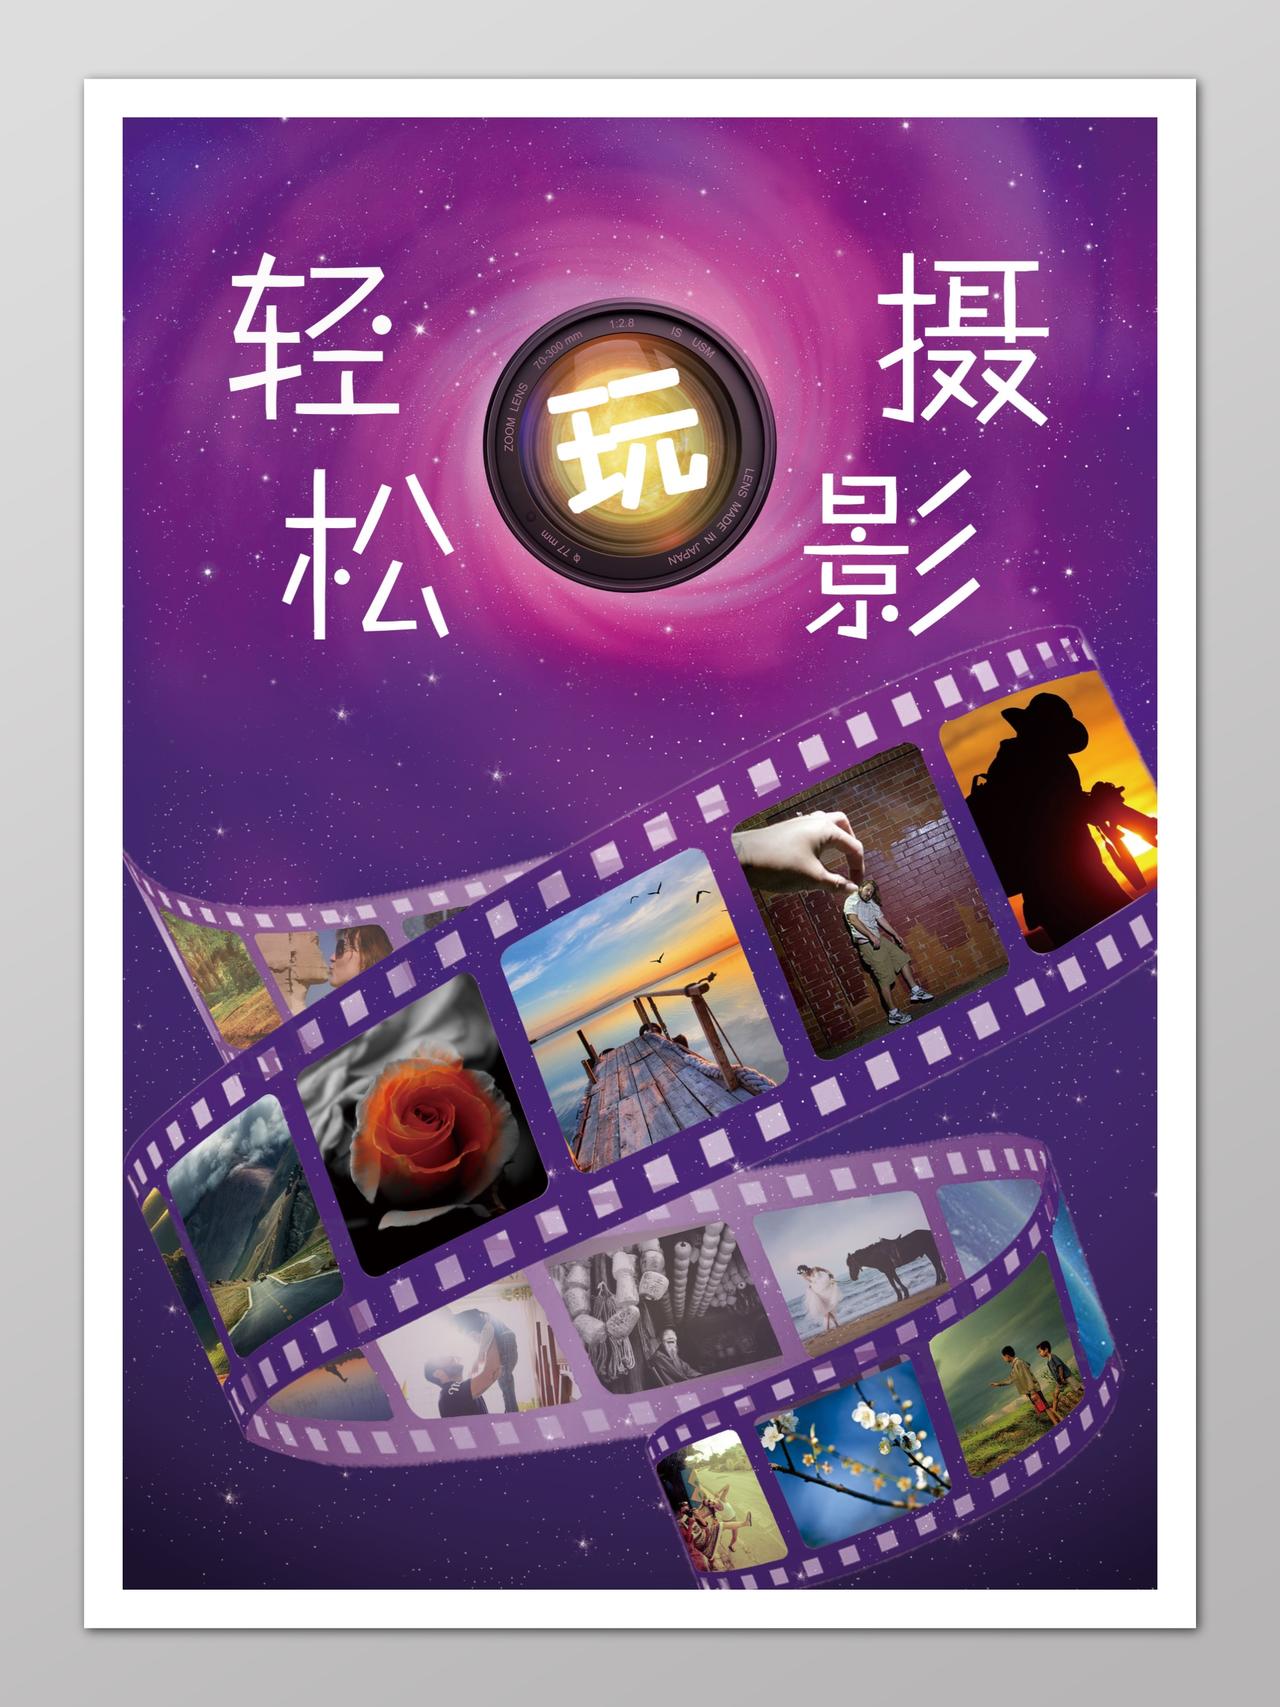 轻松玩摄影摄影主题宣传紫色胶卷相片设计海报宣传单